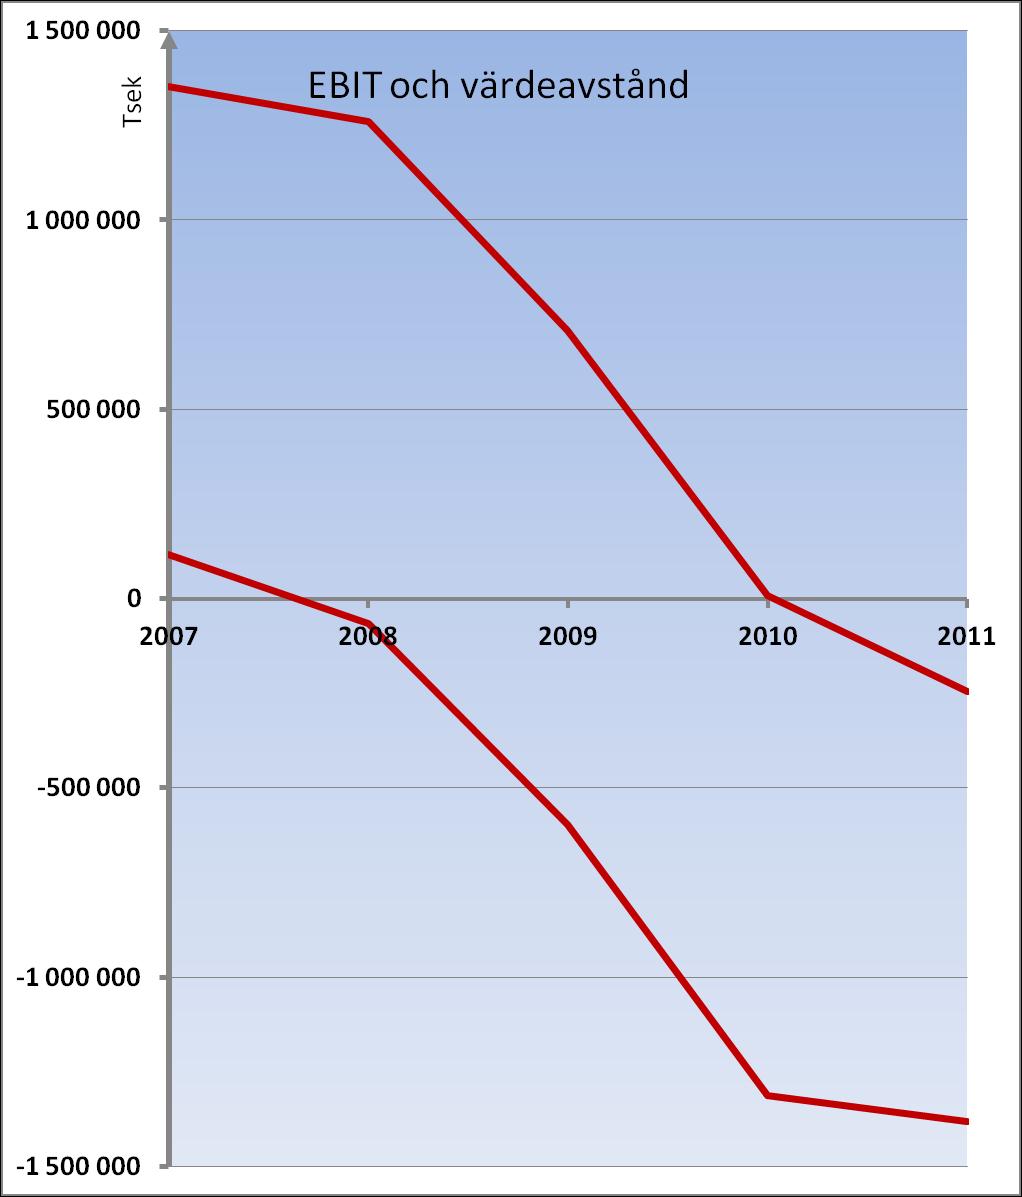 Tågbranschen Tågbranschen har tappat 1600 msek i EBIT 2007-2011